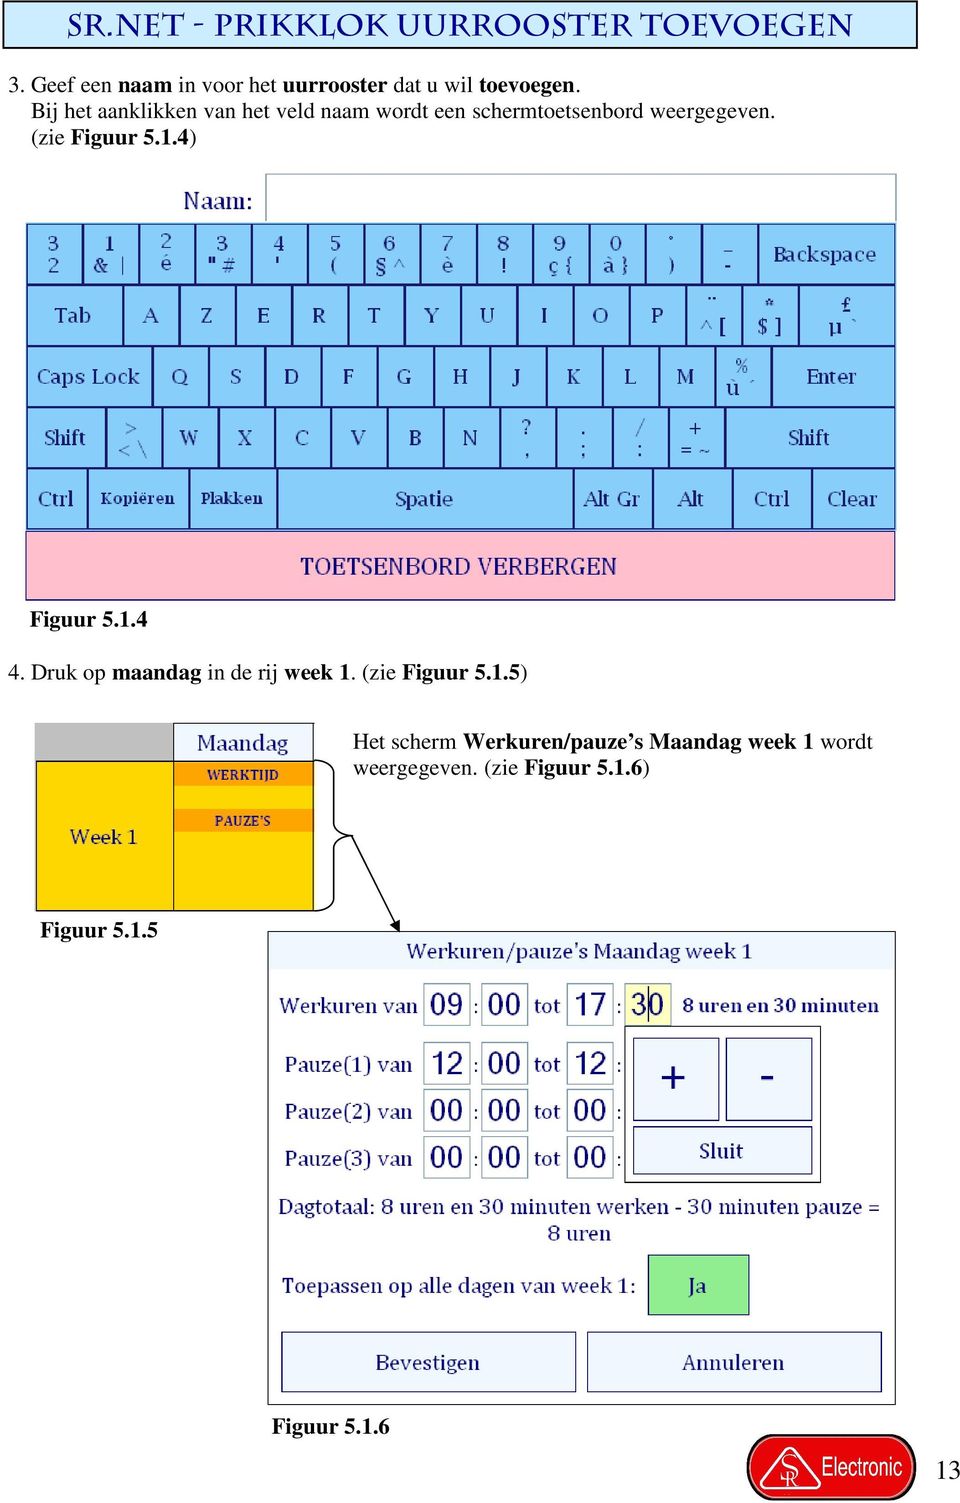 Bij het aanklikken van het veld naam wordt een schermtoetsenbord weergegeven. (zie Figuur 5.1.